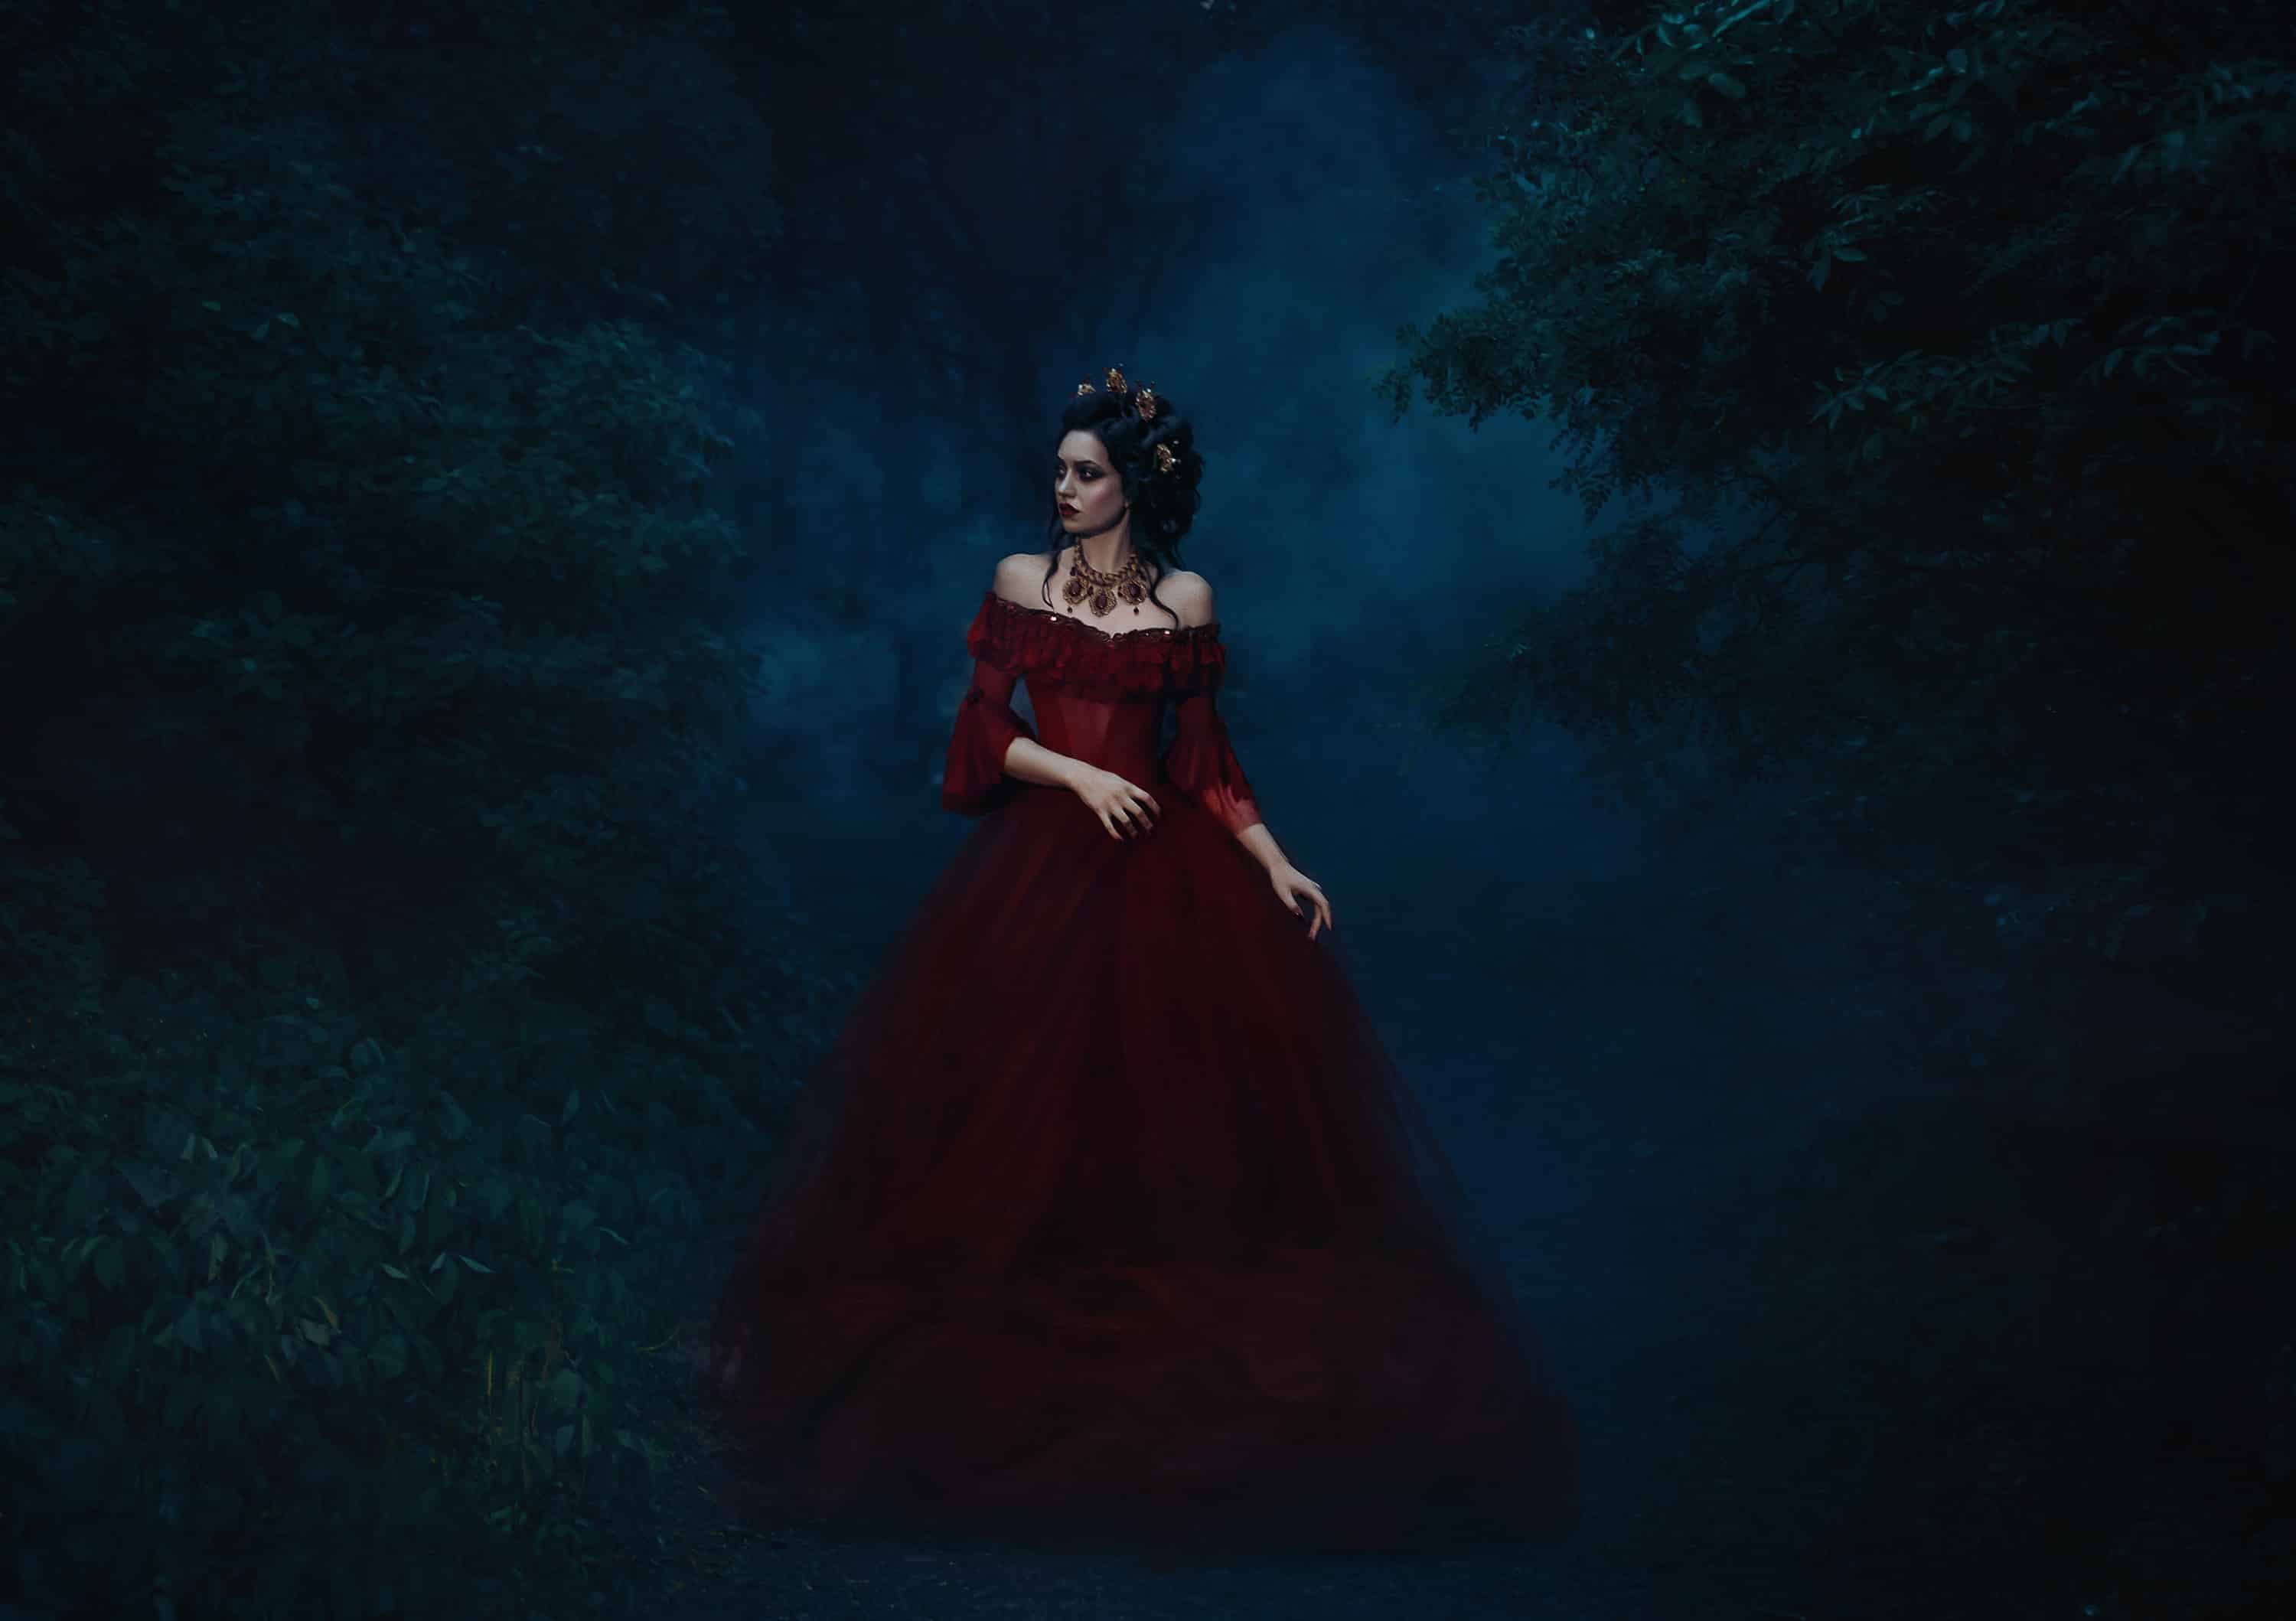 dark evil queen sneaks through the dark forest at night,   Princ